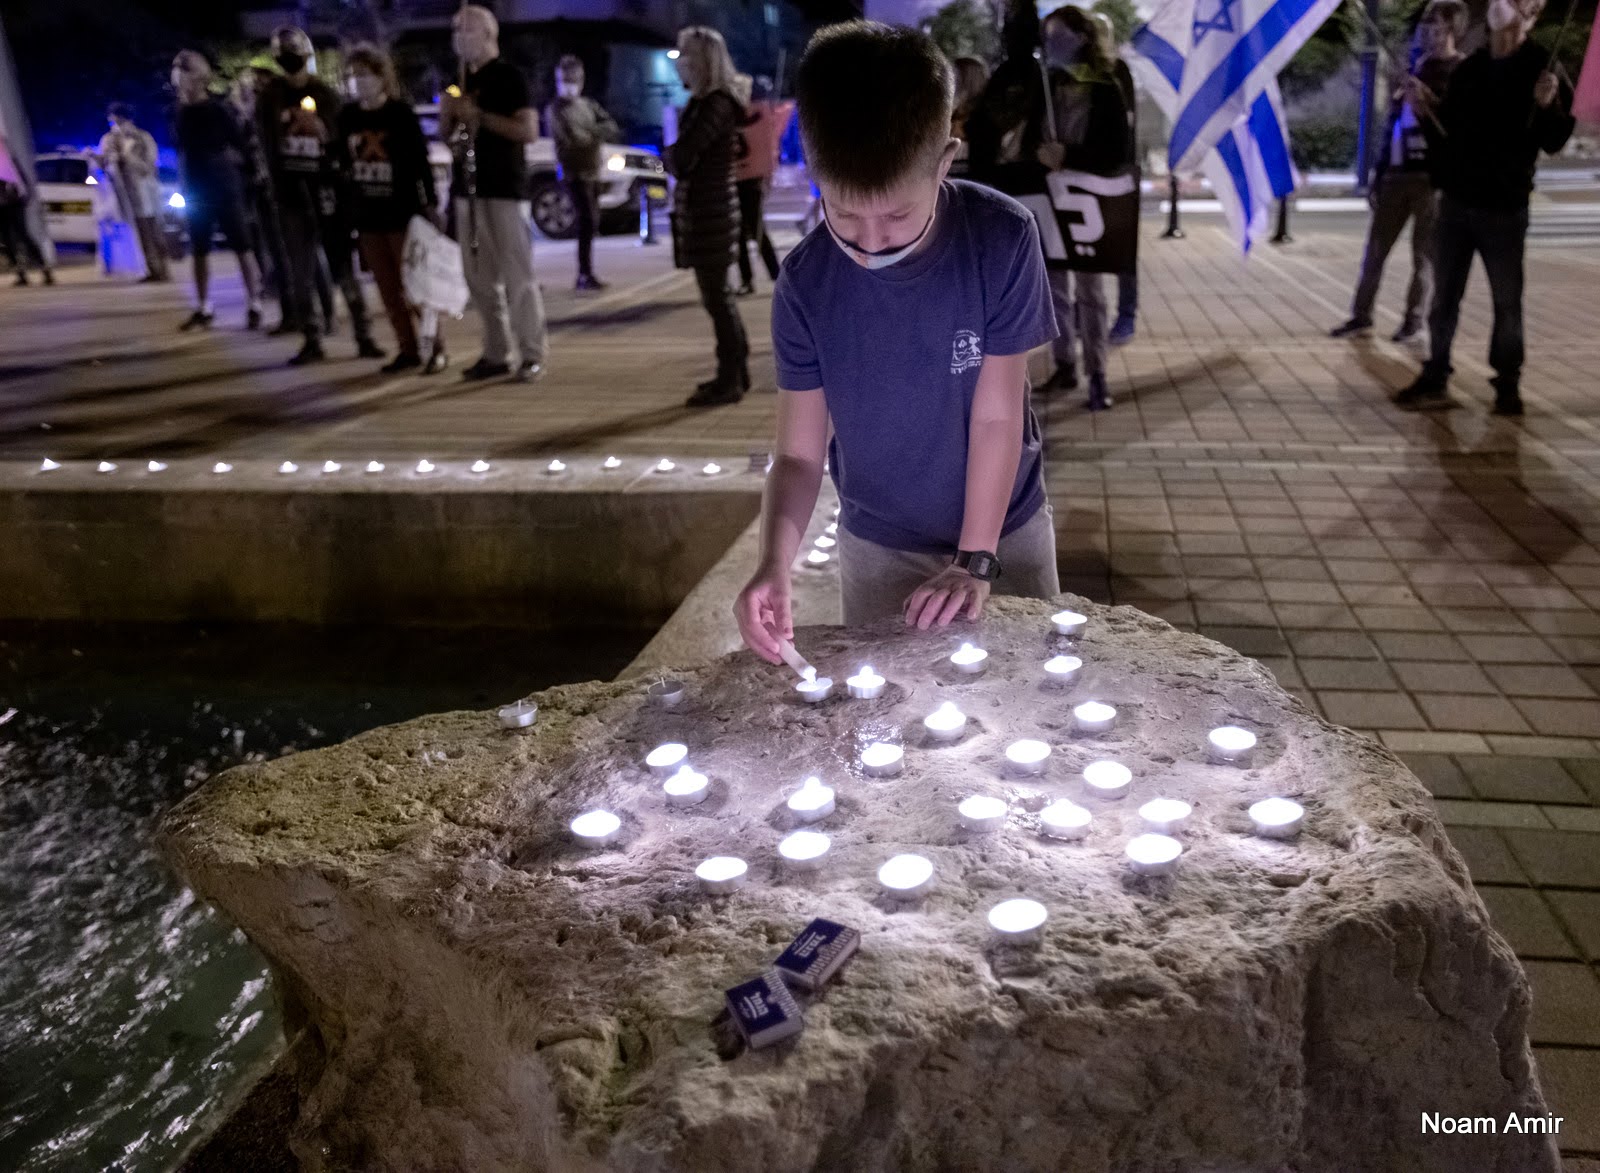 הדלקת נרות בטקס הזיכרון ליצחק רבין במלאת 25 להרצחו 05.11.20 צילום נעם אמיר